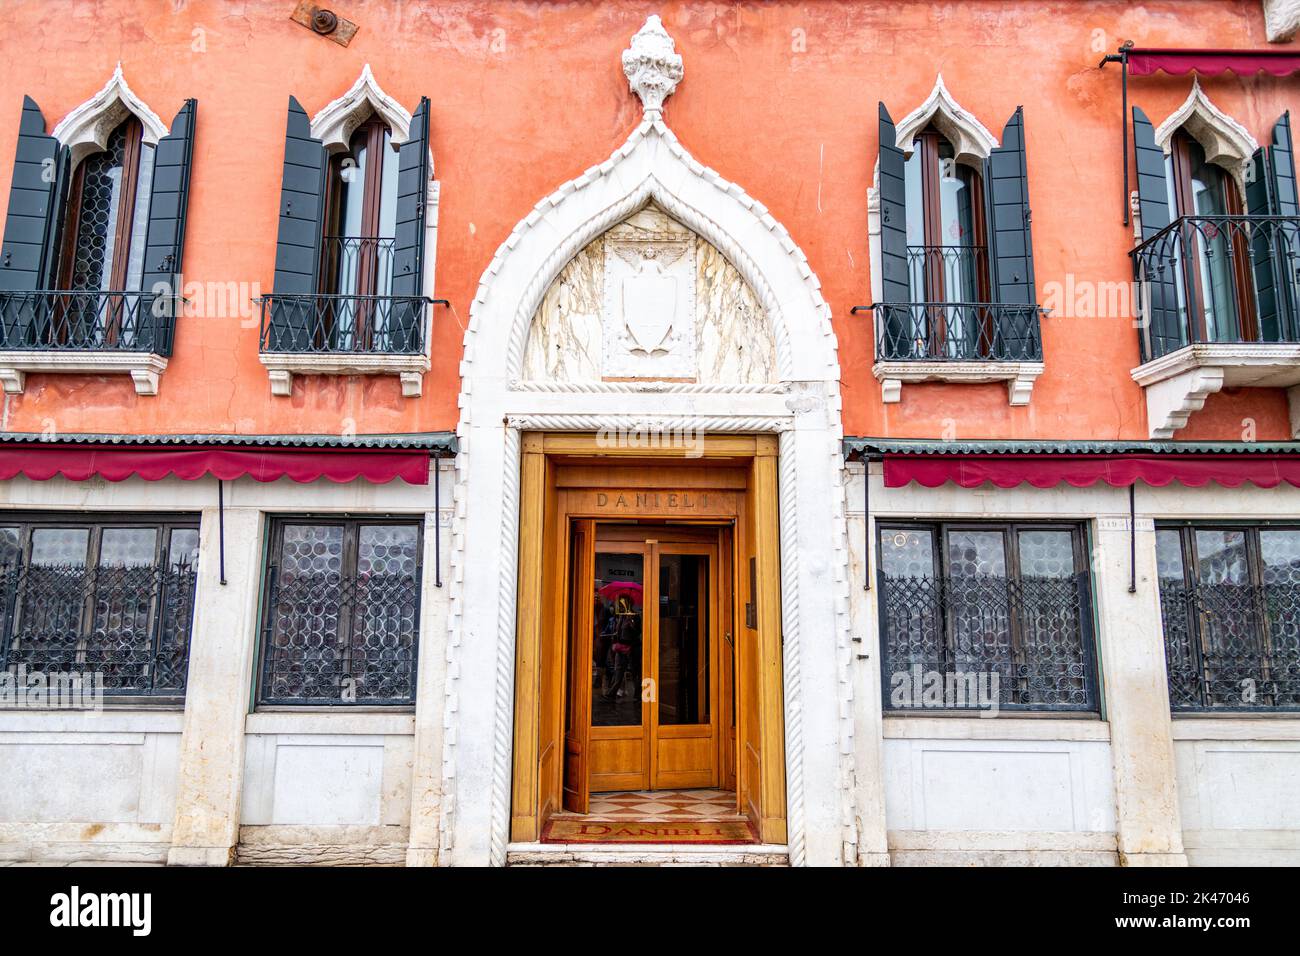 L'entrée arrière de l'hôtel Danieli à Venise, Italie Banque D'Images